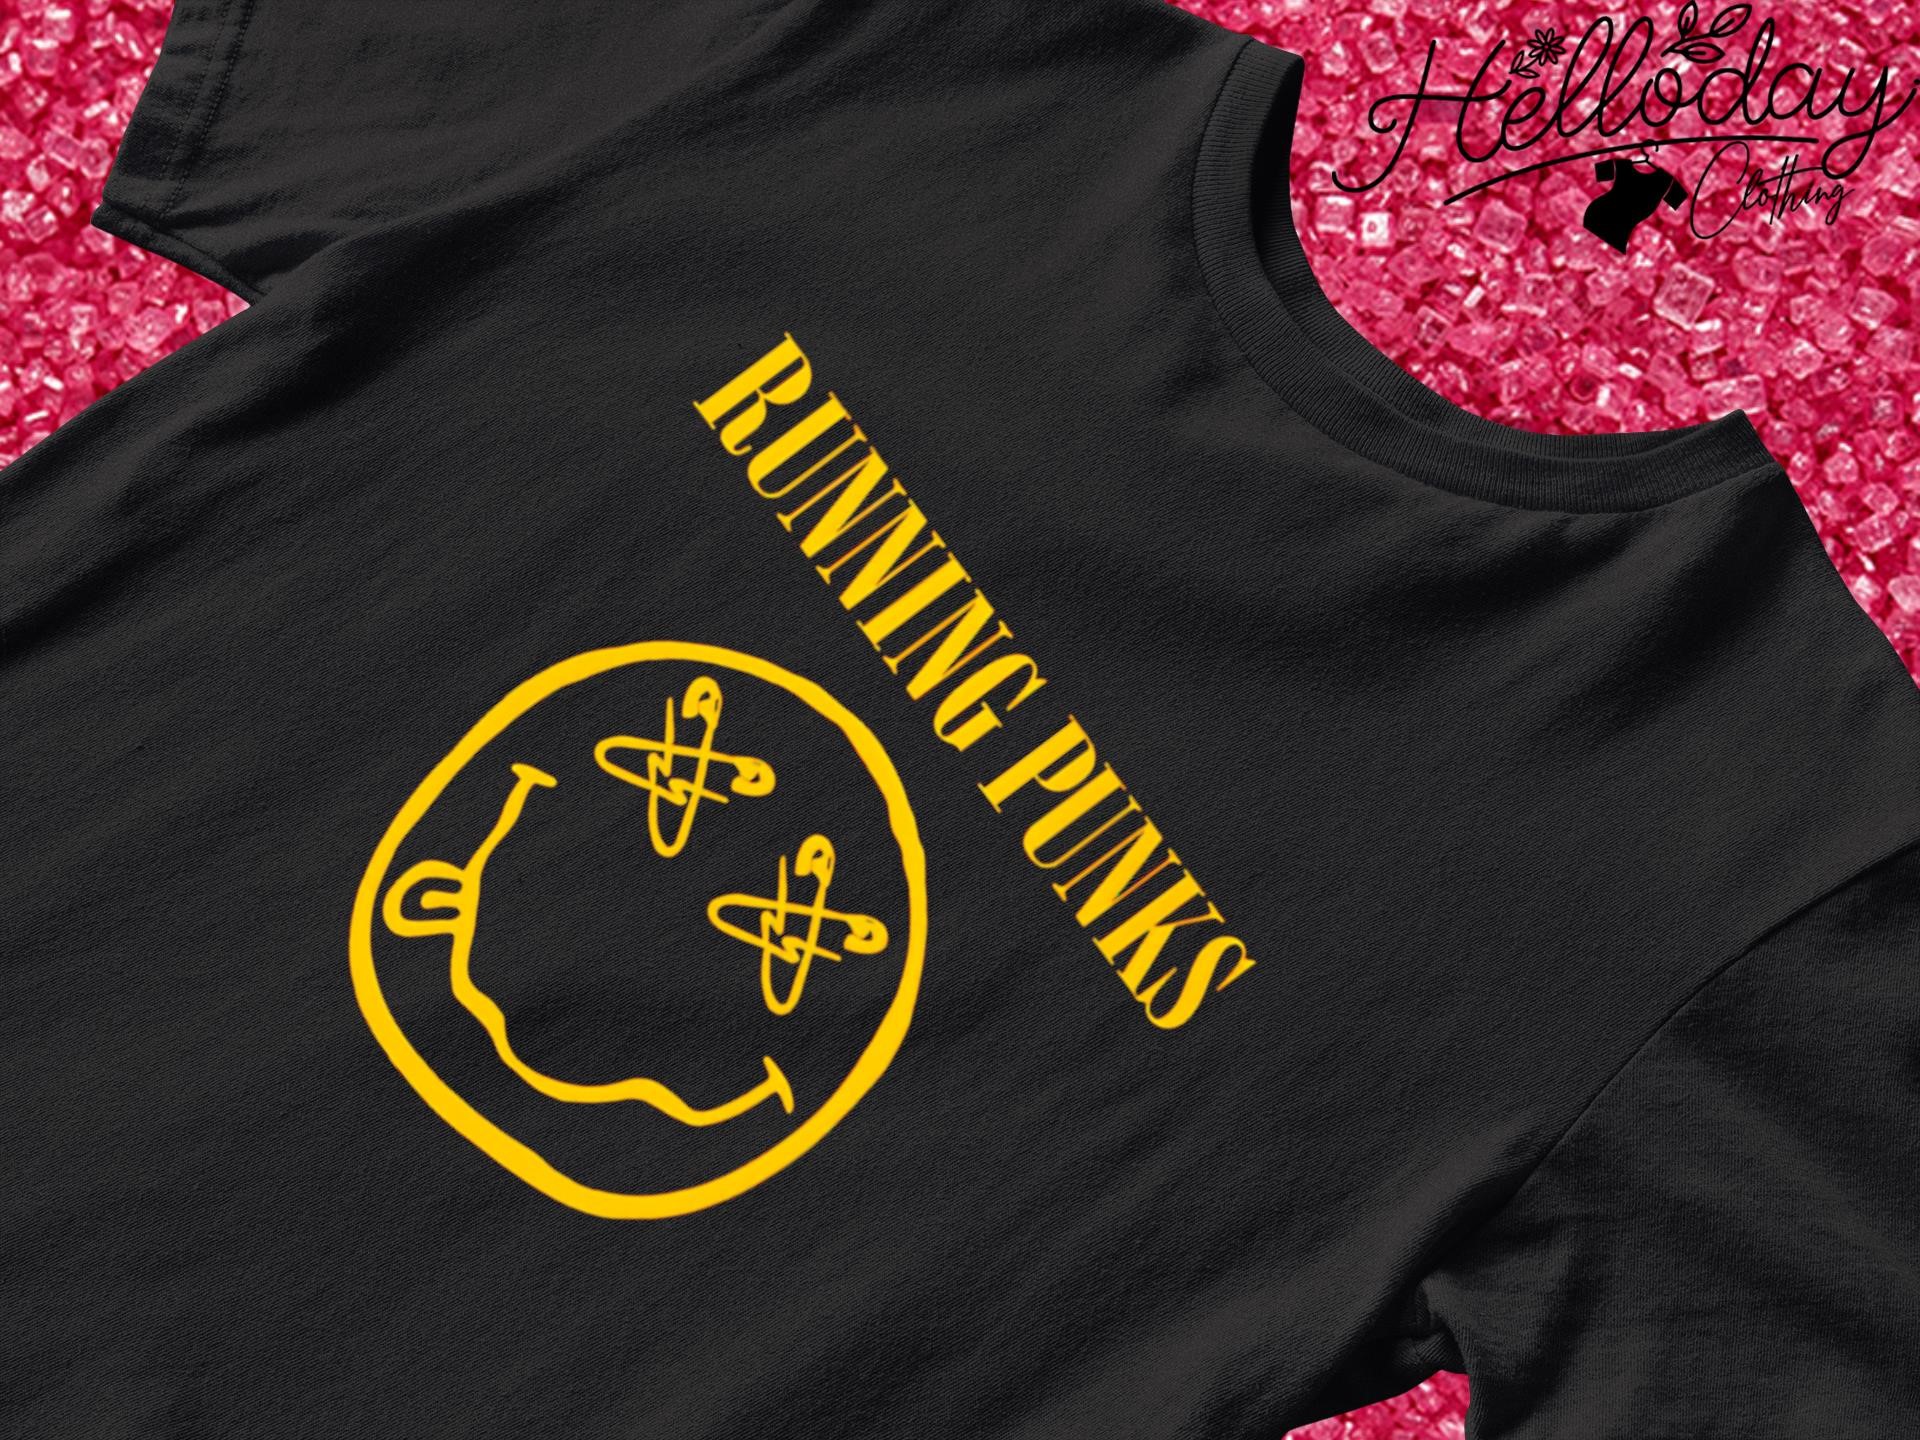 Running Punks shirt